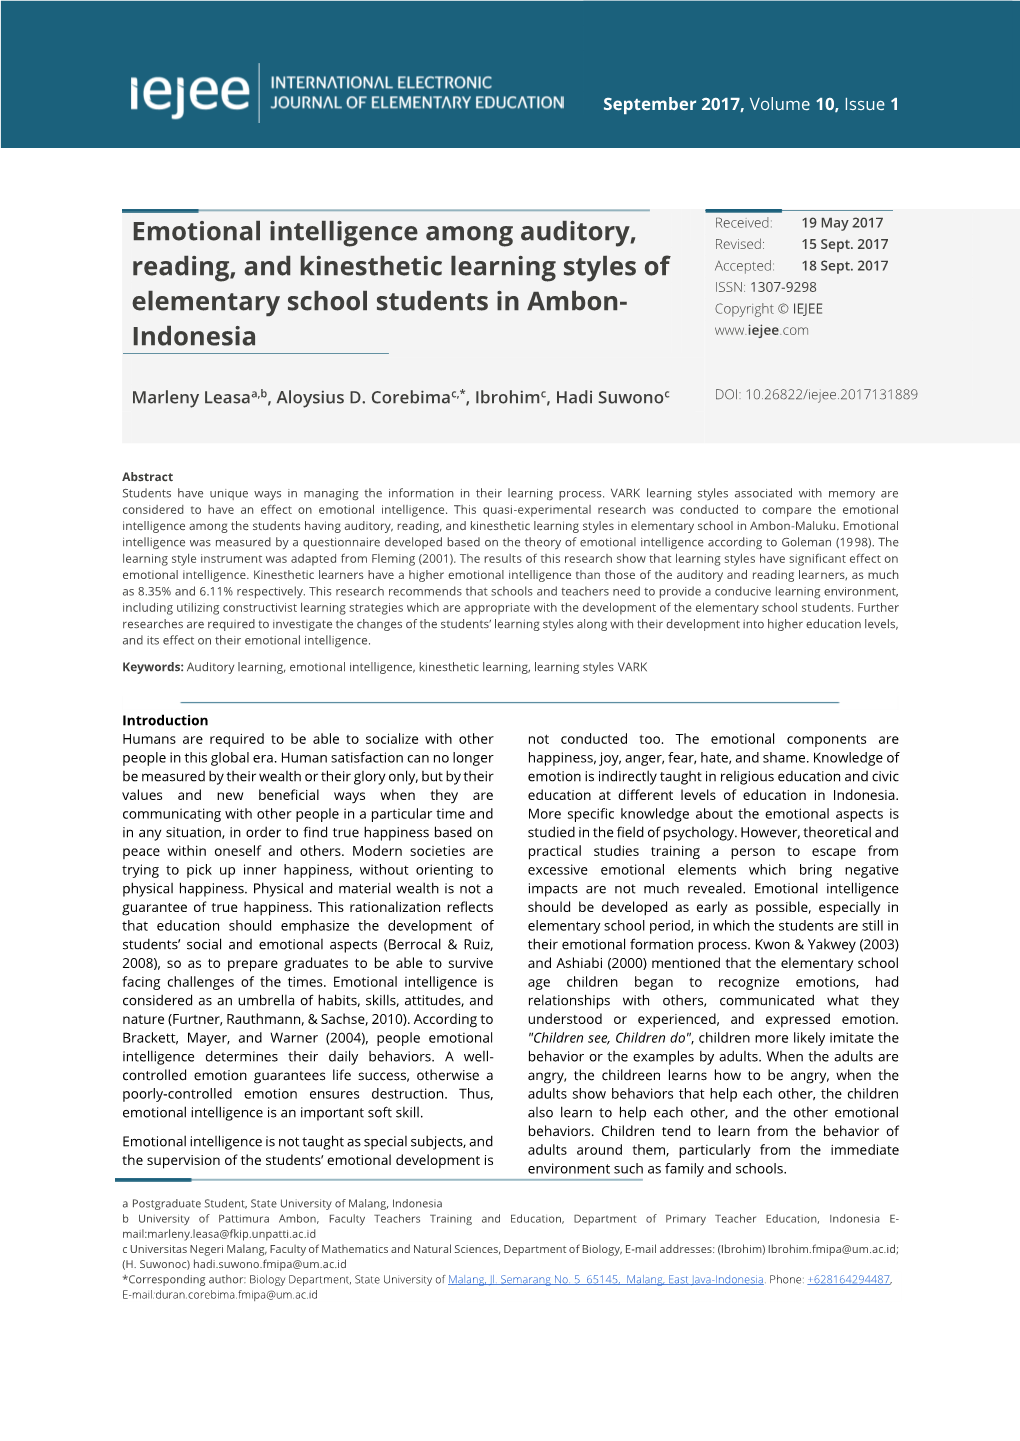 Emotional Intelligence Among Auditory, Reading, and Kinesthetic Learning Styles / Leasa, Corebima, Ibrohim & Suwono